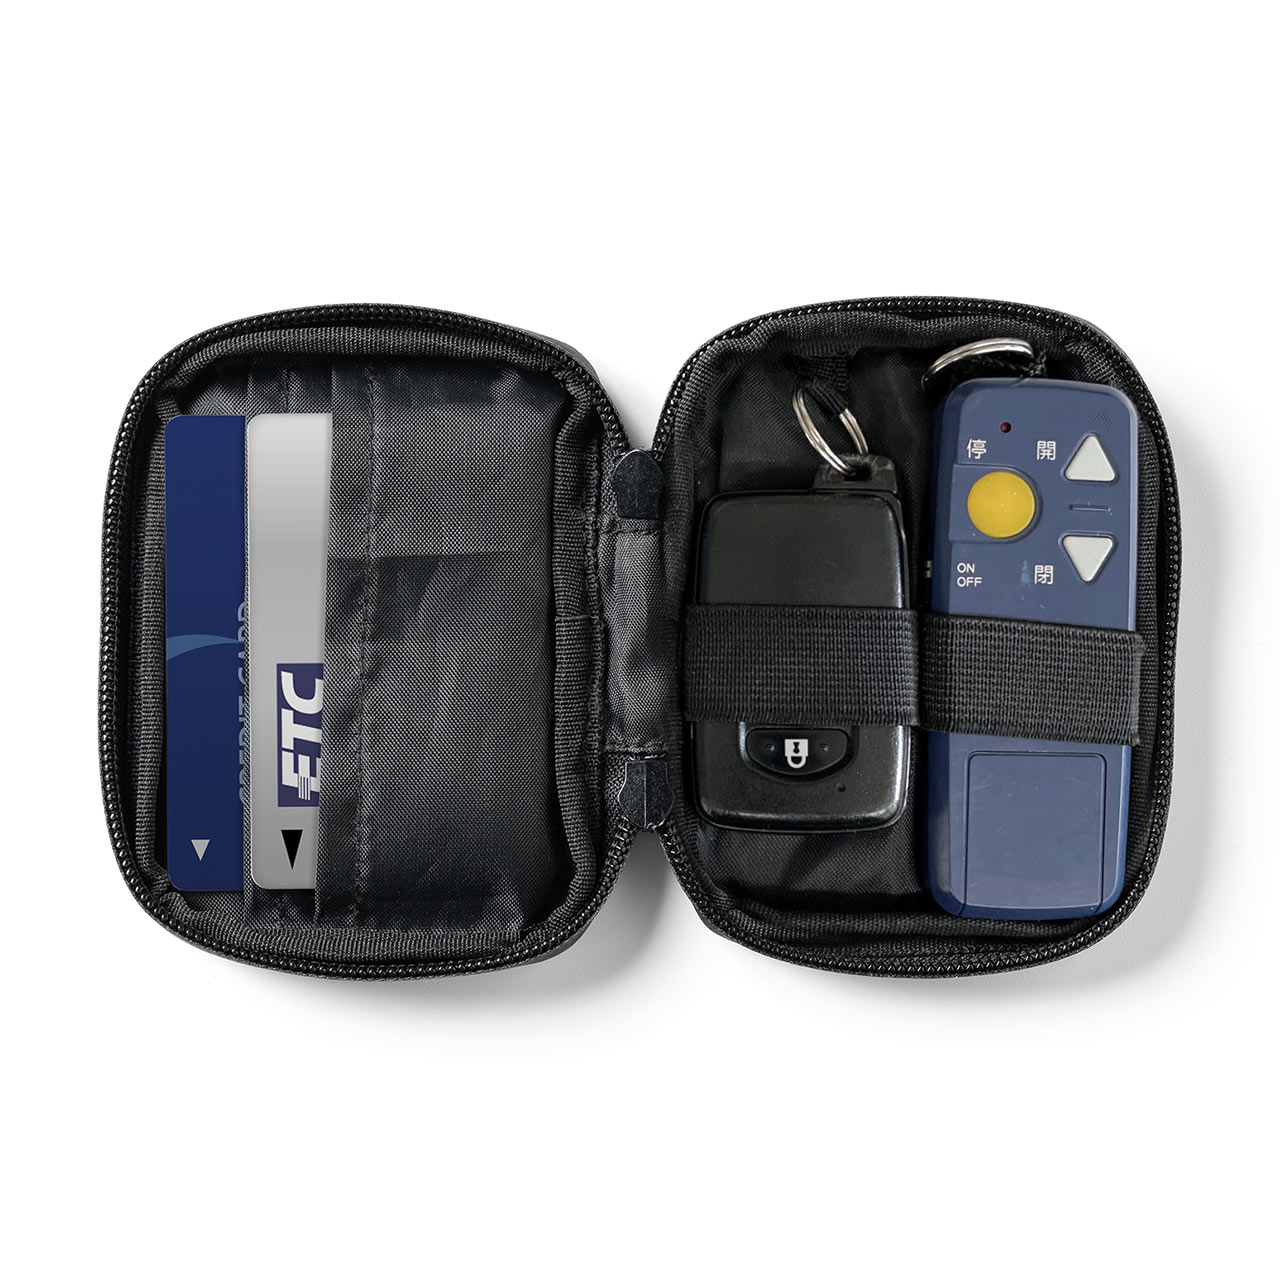 スマートキーケース スマートキー2個収納 カード2枚収納 防水 防塵 止水ファスナー 外側ポケット付き キーリング付属 ネイビー 200-CAR095NV